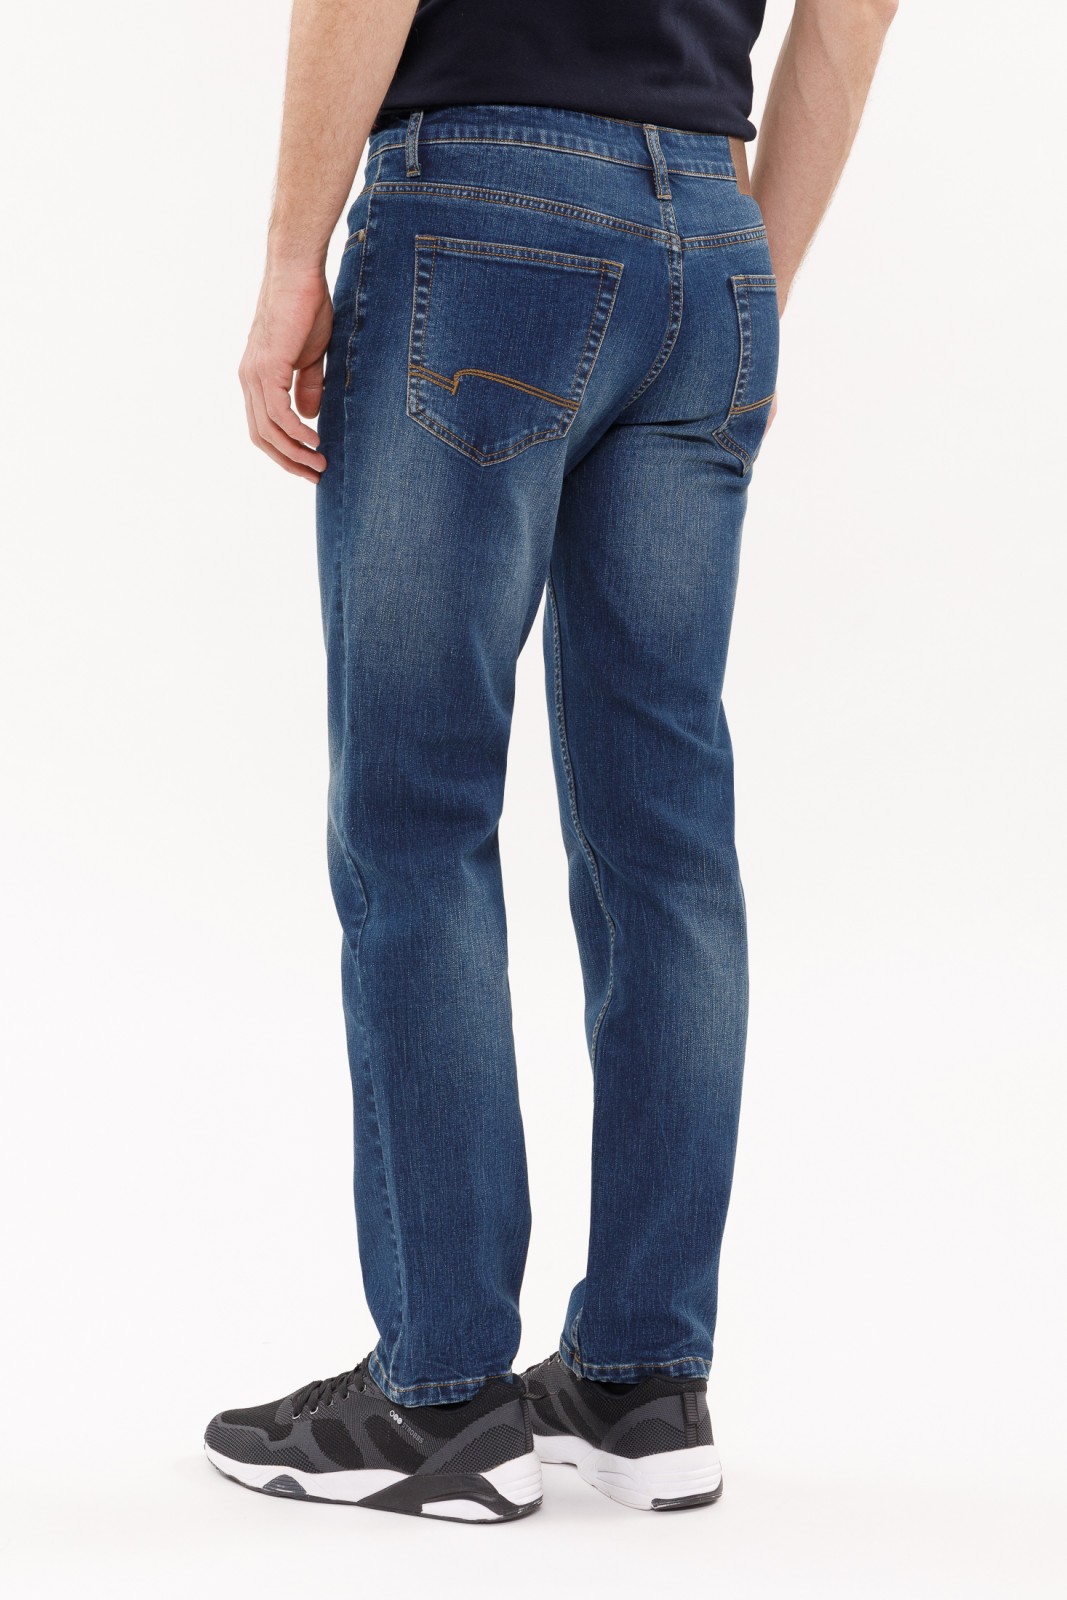 Брюки джинсовые zolla 21022714S123, цвет синий, размер 28 - фото 2